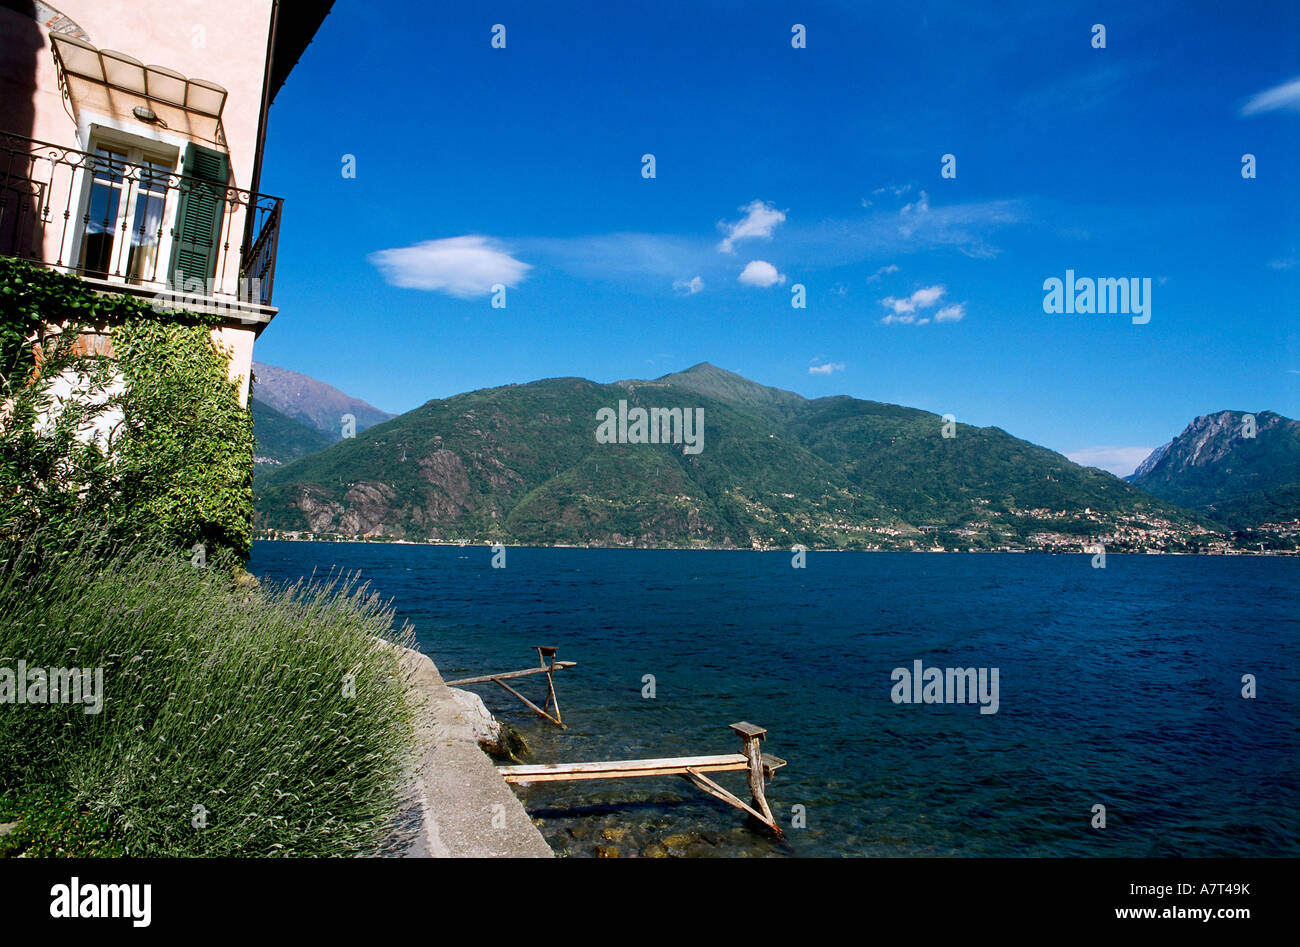 Edificio frente al mar, Santa Maria Rezzonico, el Lago de Como, en Lombardía, Italia Foto de stock